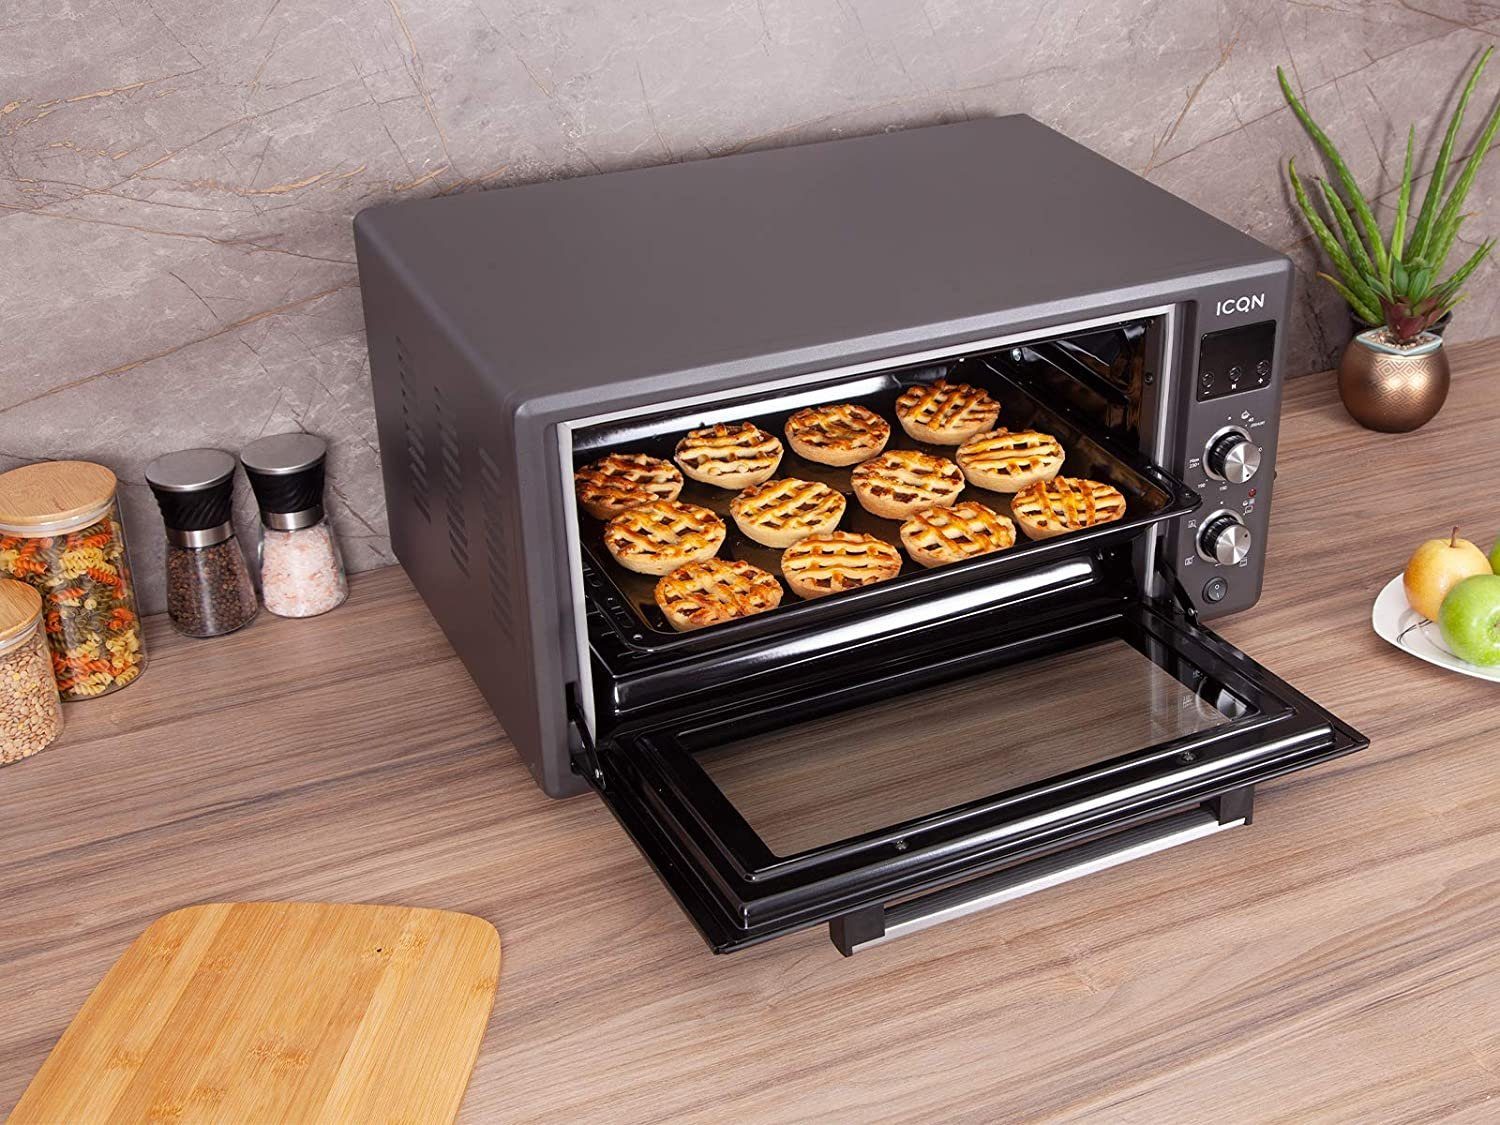 ICQN Minibackofen DIGITAL 50 Pizza-Ofen, inkl. Doppelverglasung, Black W, Emailliert 40°-230°C, Liter, LED-Anzeige, Backblech Drehspieß, 1400 Set, Popup-Knöpfe